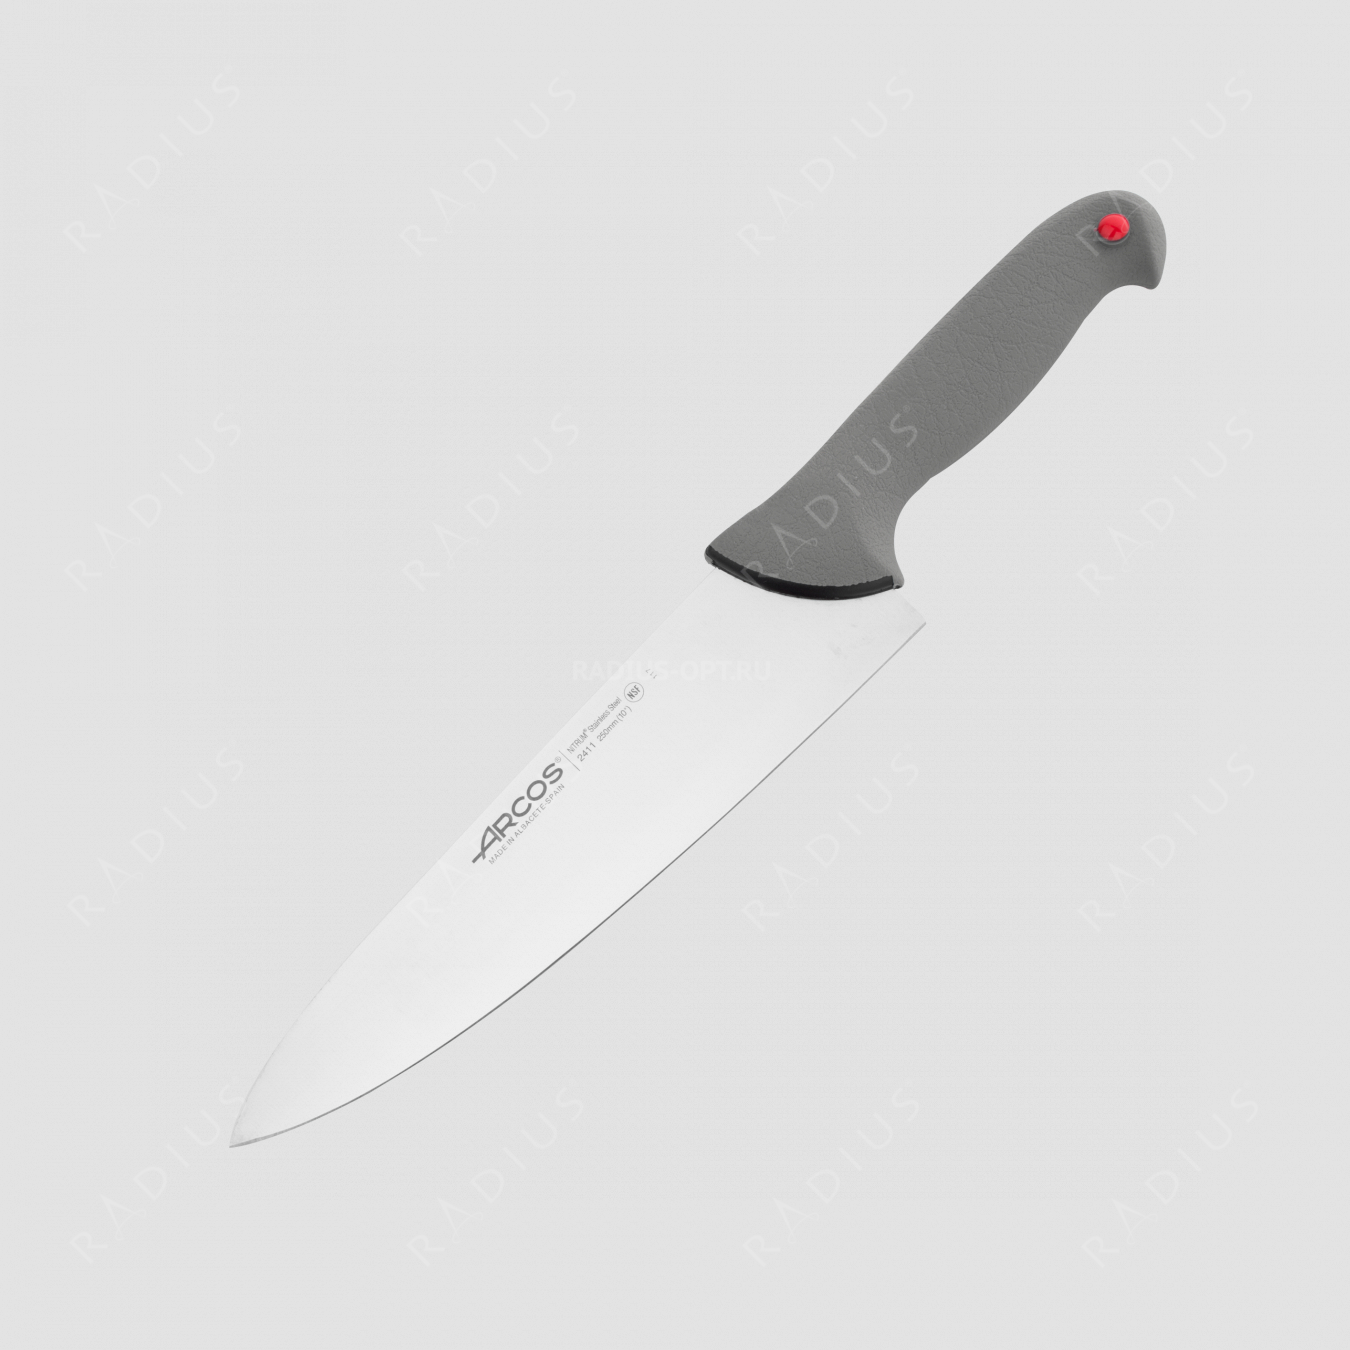 Профессиональный поварской кухонный нож 25 см, серия Colour-prof, ARCOS, Испания